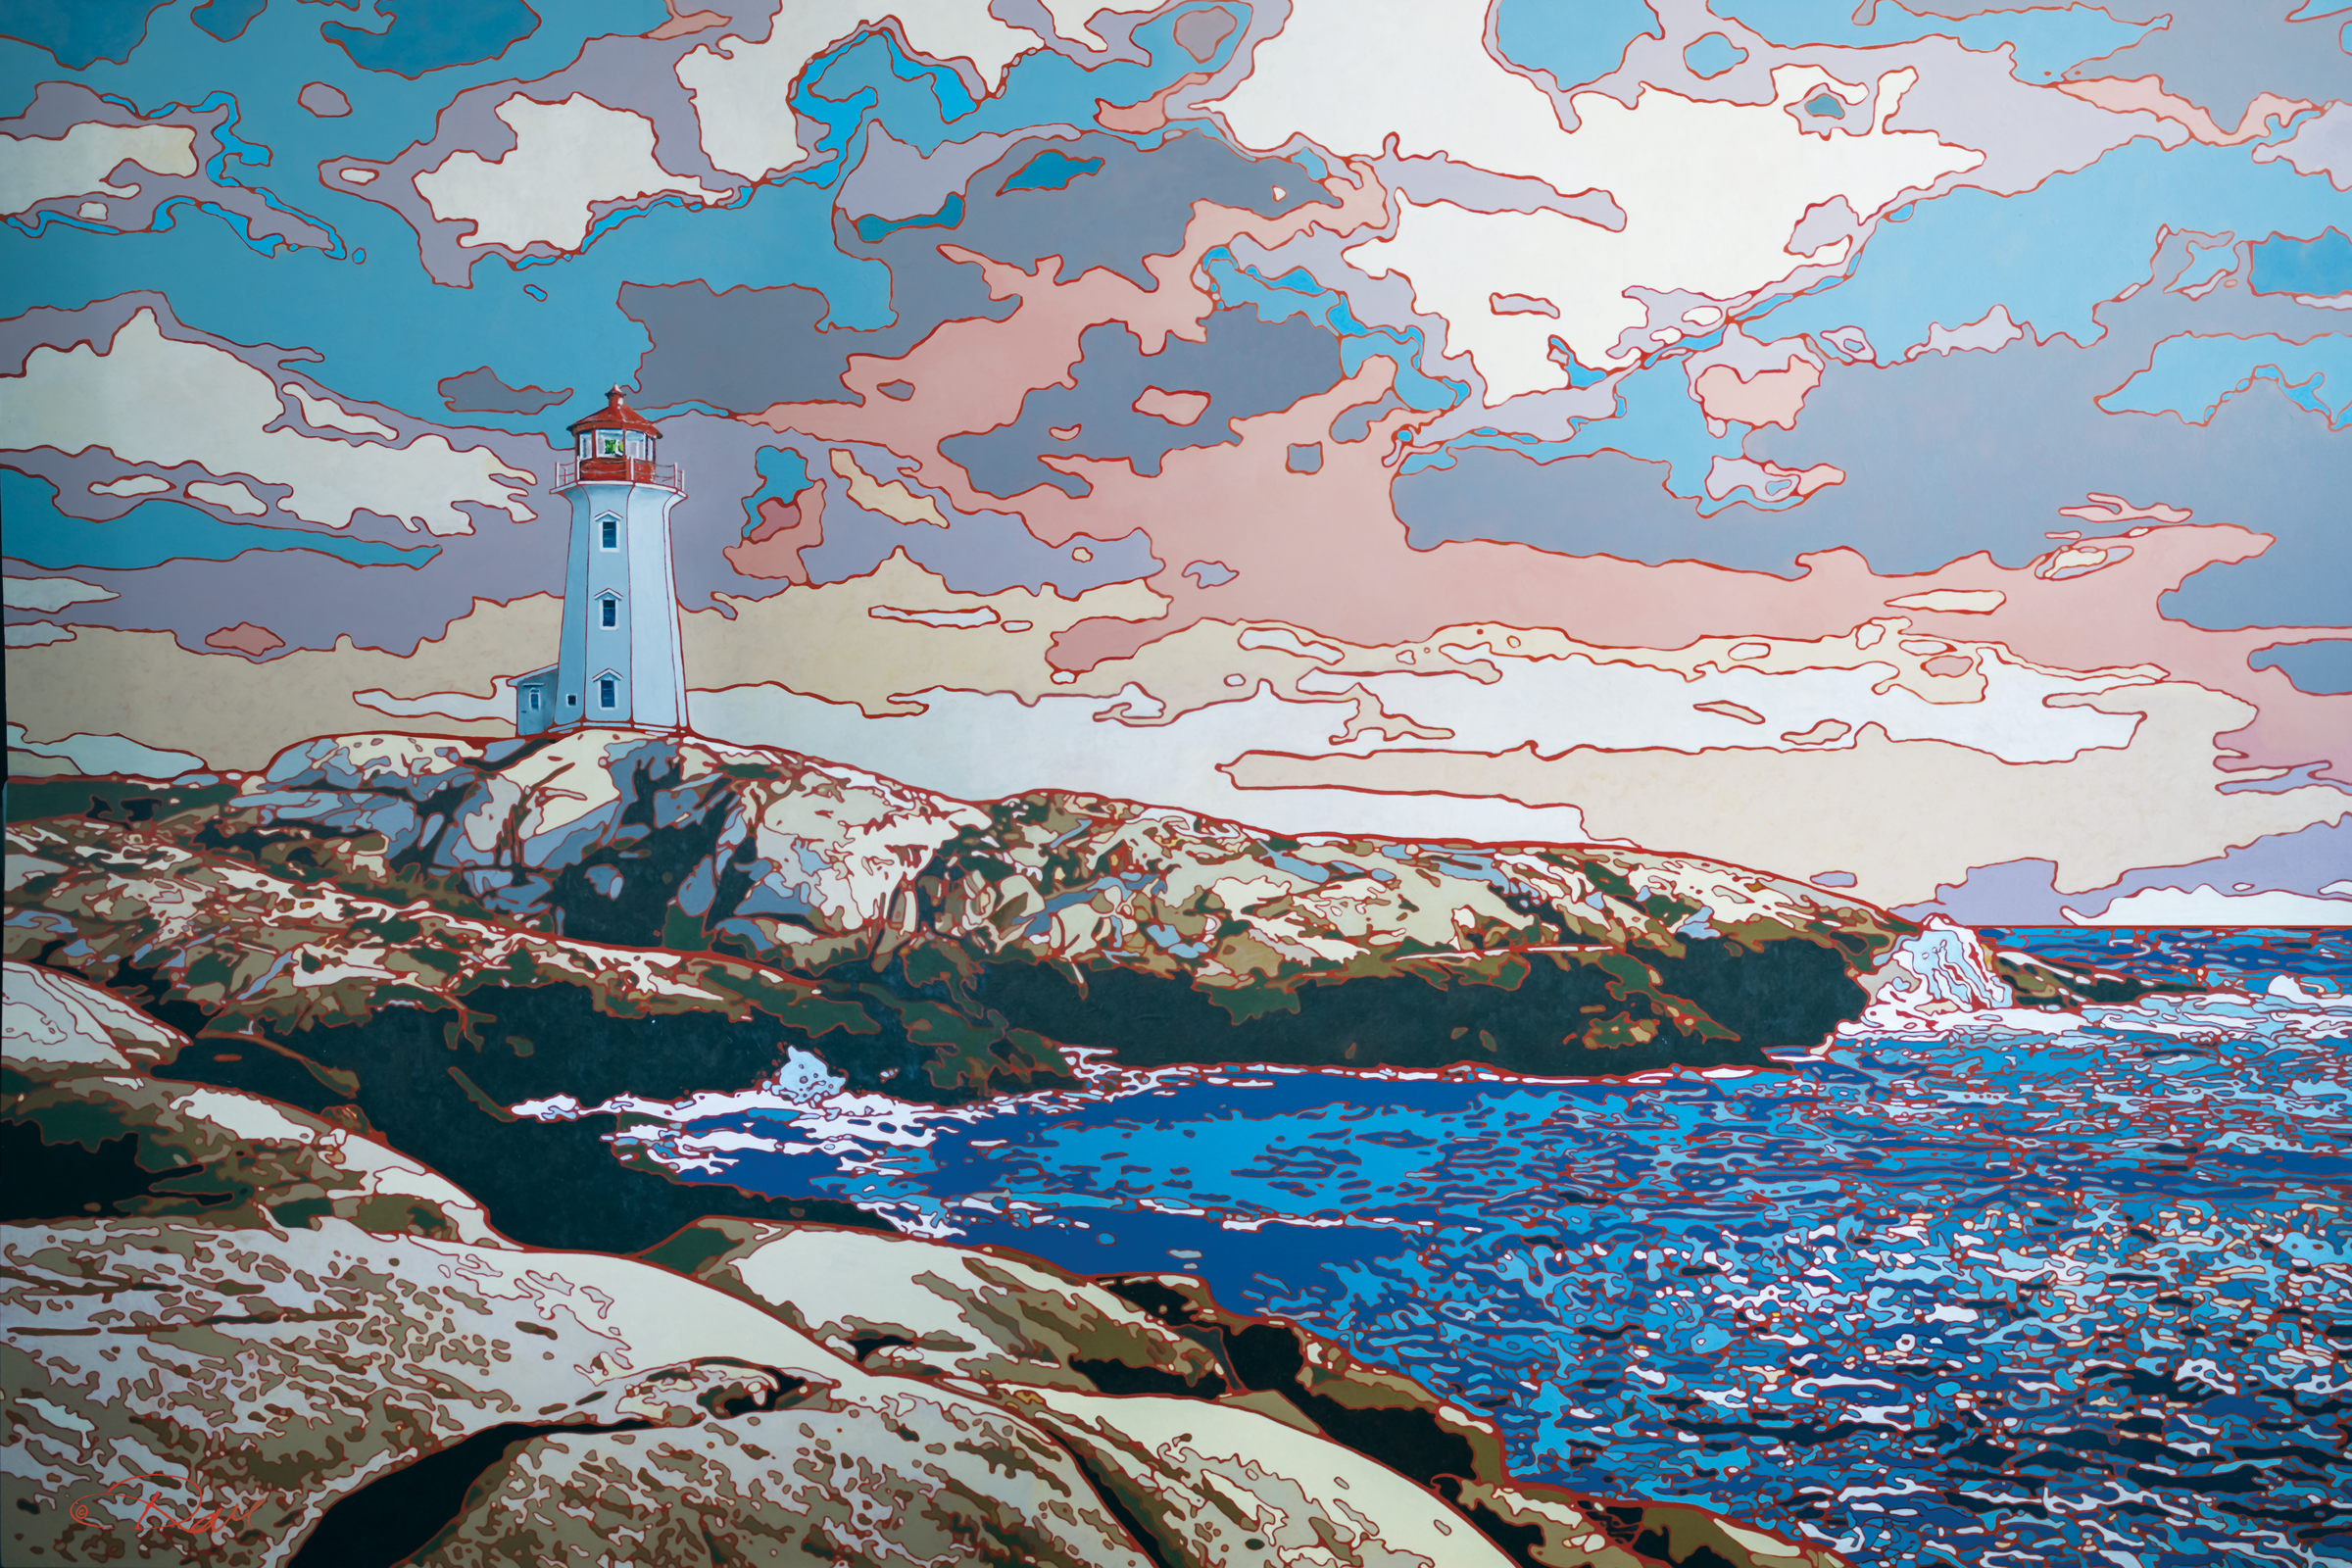 Peggys Cove  Nova Scotia  Original Acrylic on Panel 